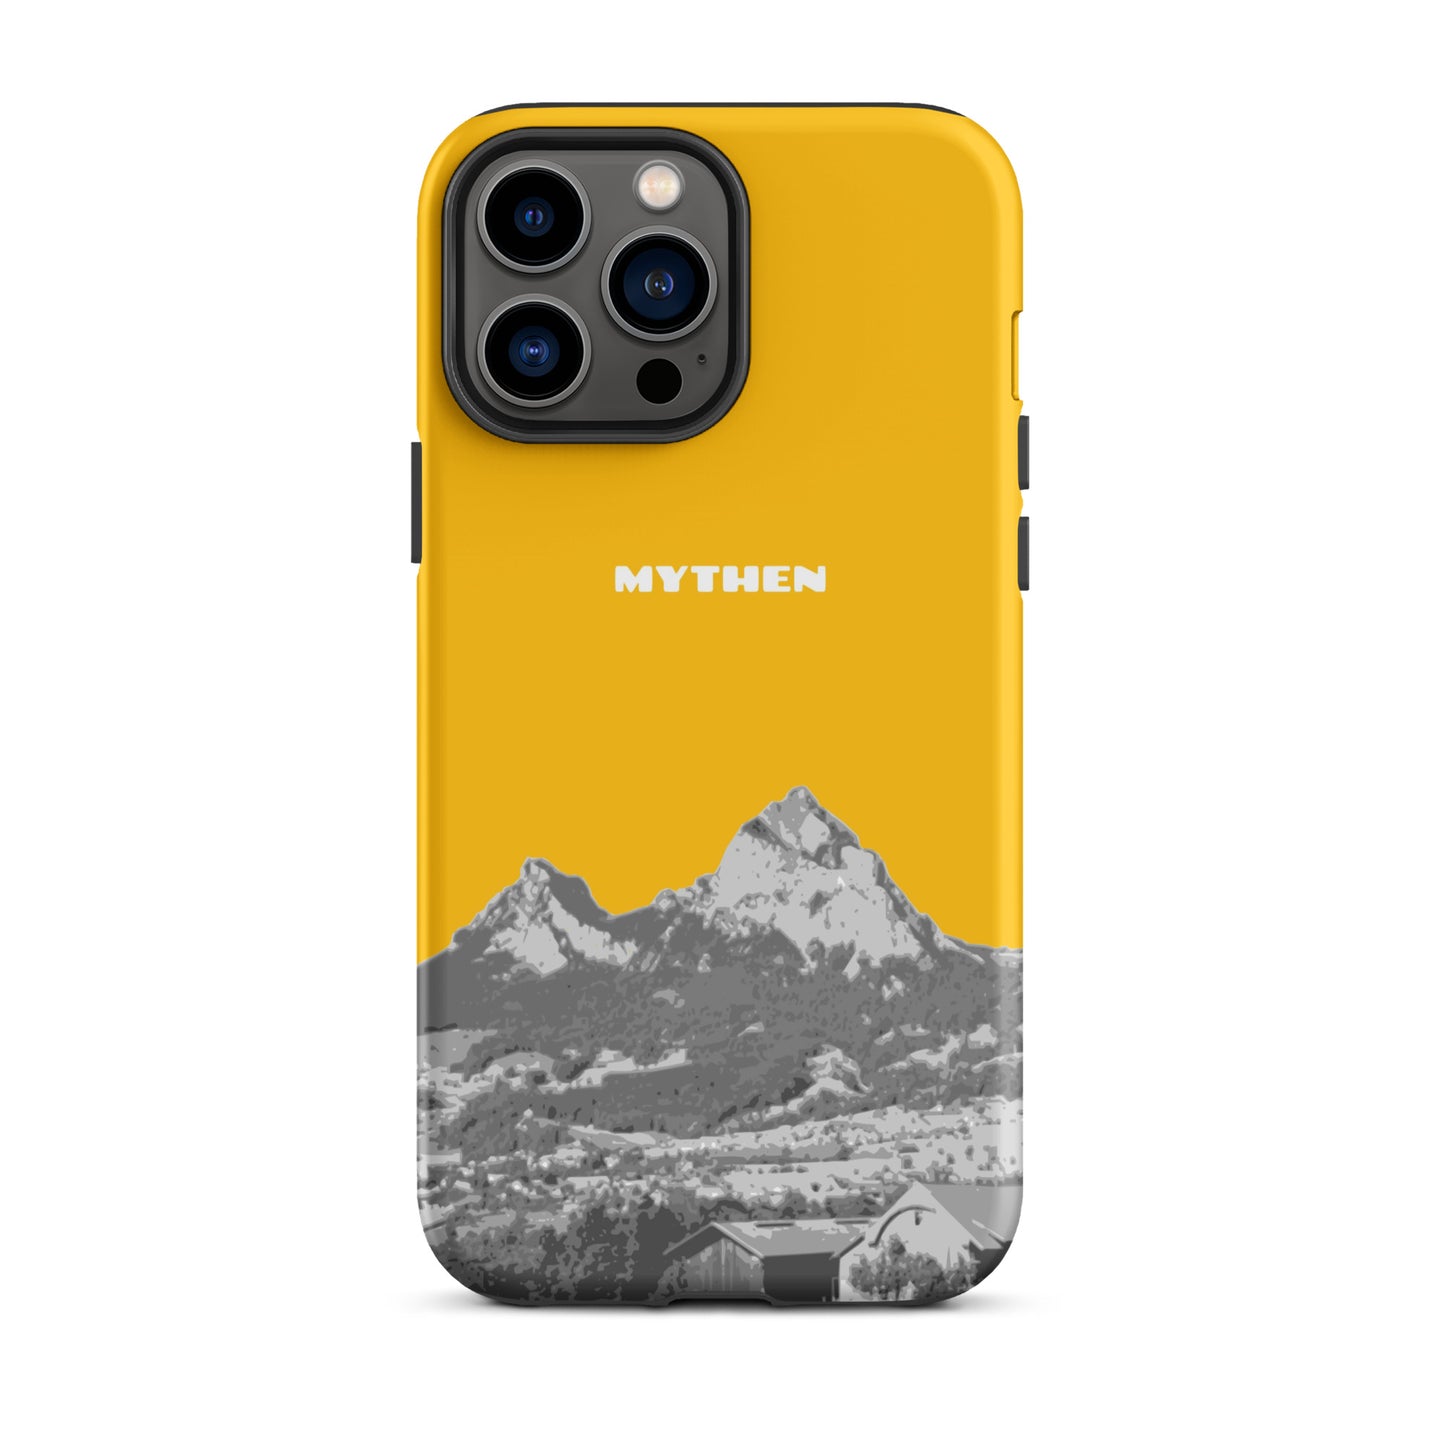 Hülle für das iPhone 13 Pro Max von Apple in der Farbe Goldgelb, dass den Grossen Mythen und den Kleinen Mythen bei Schwyz zeigt. 